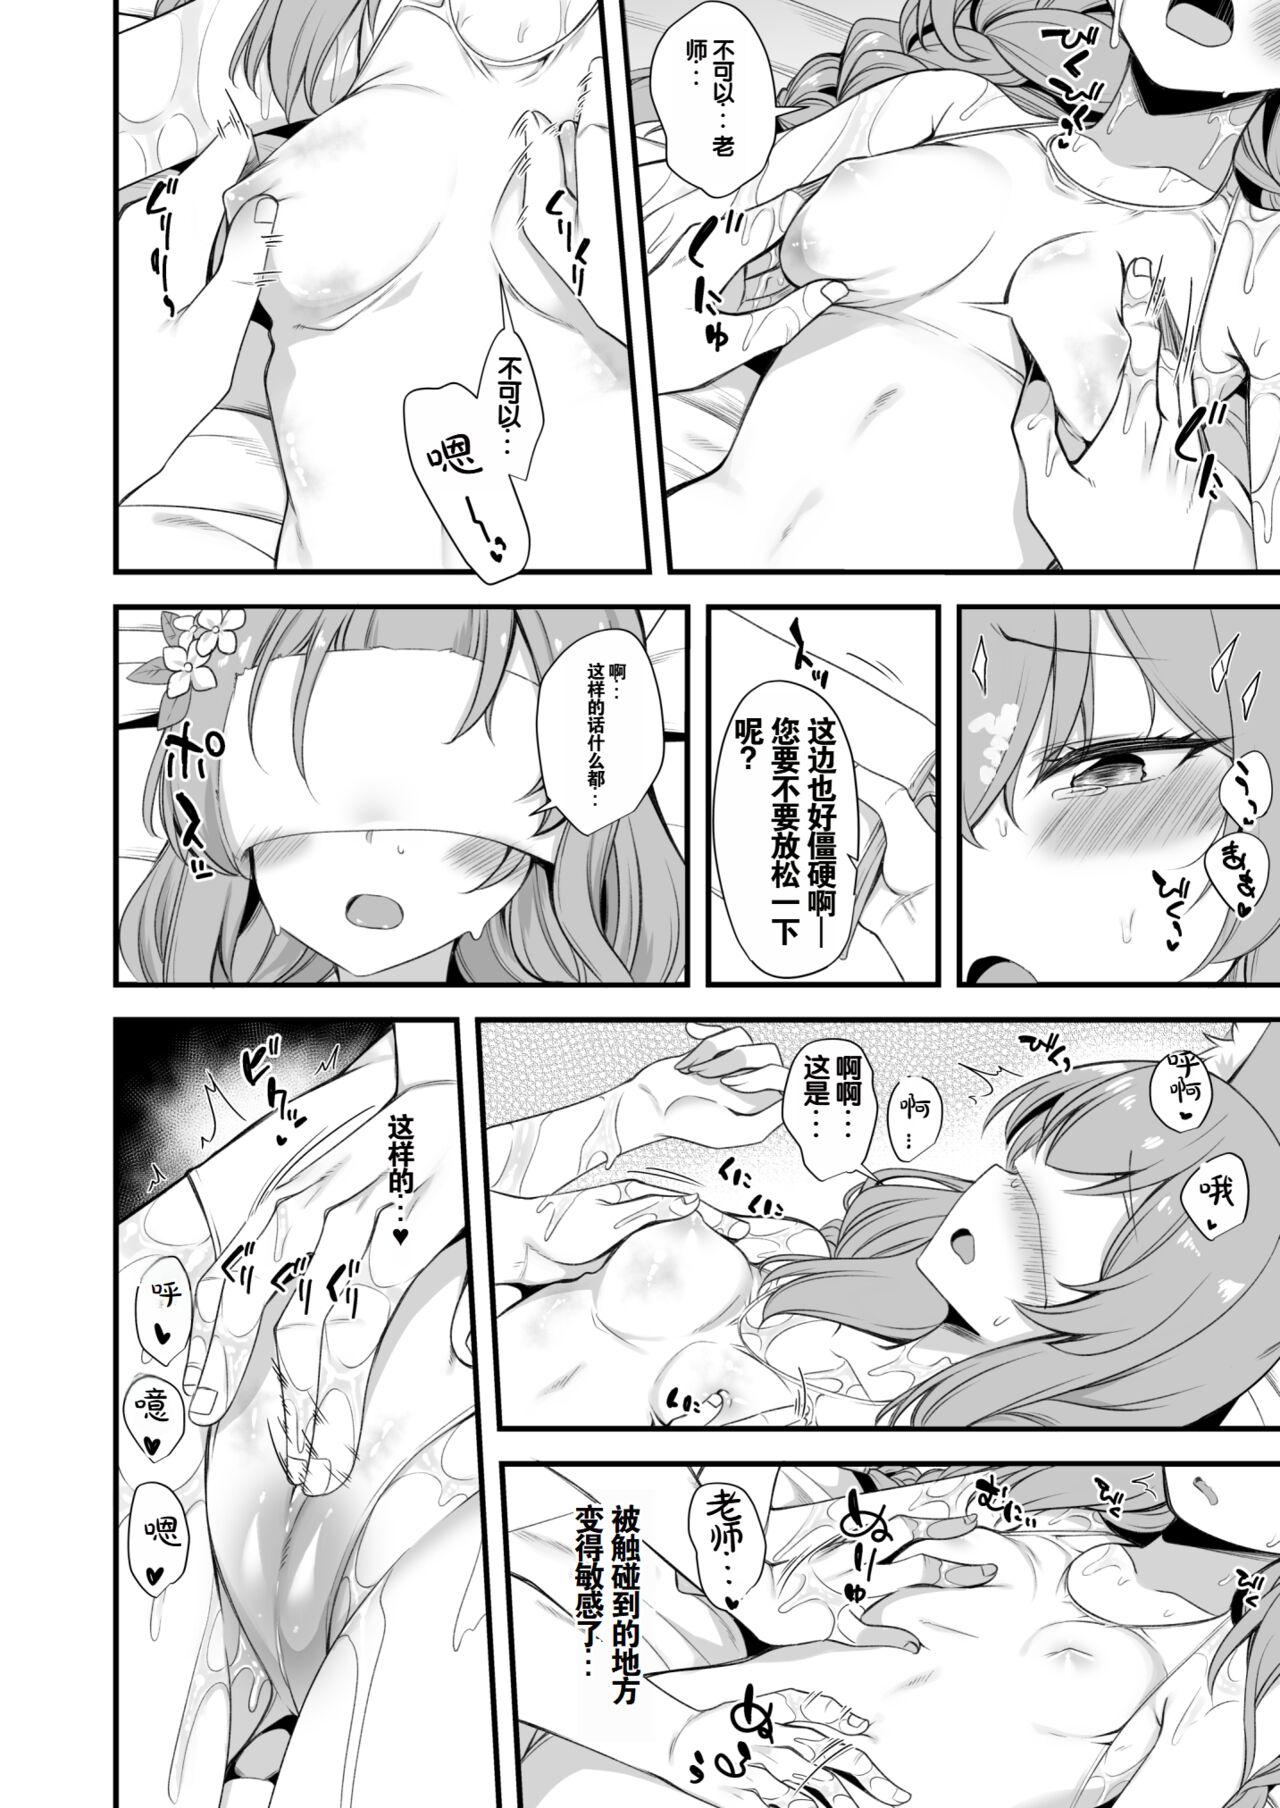 Mari Oil Massage Ecchi Manga 4